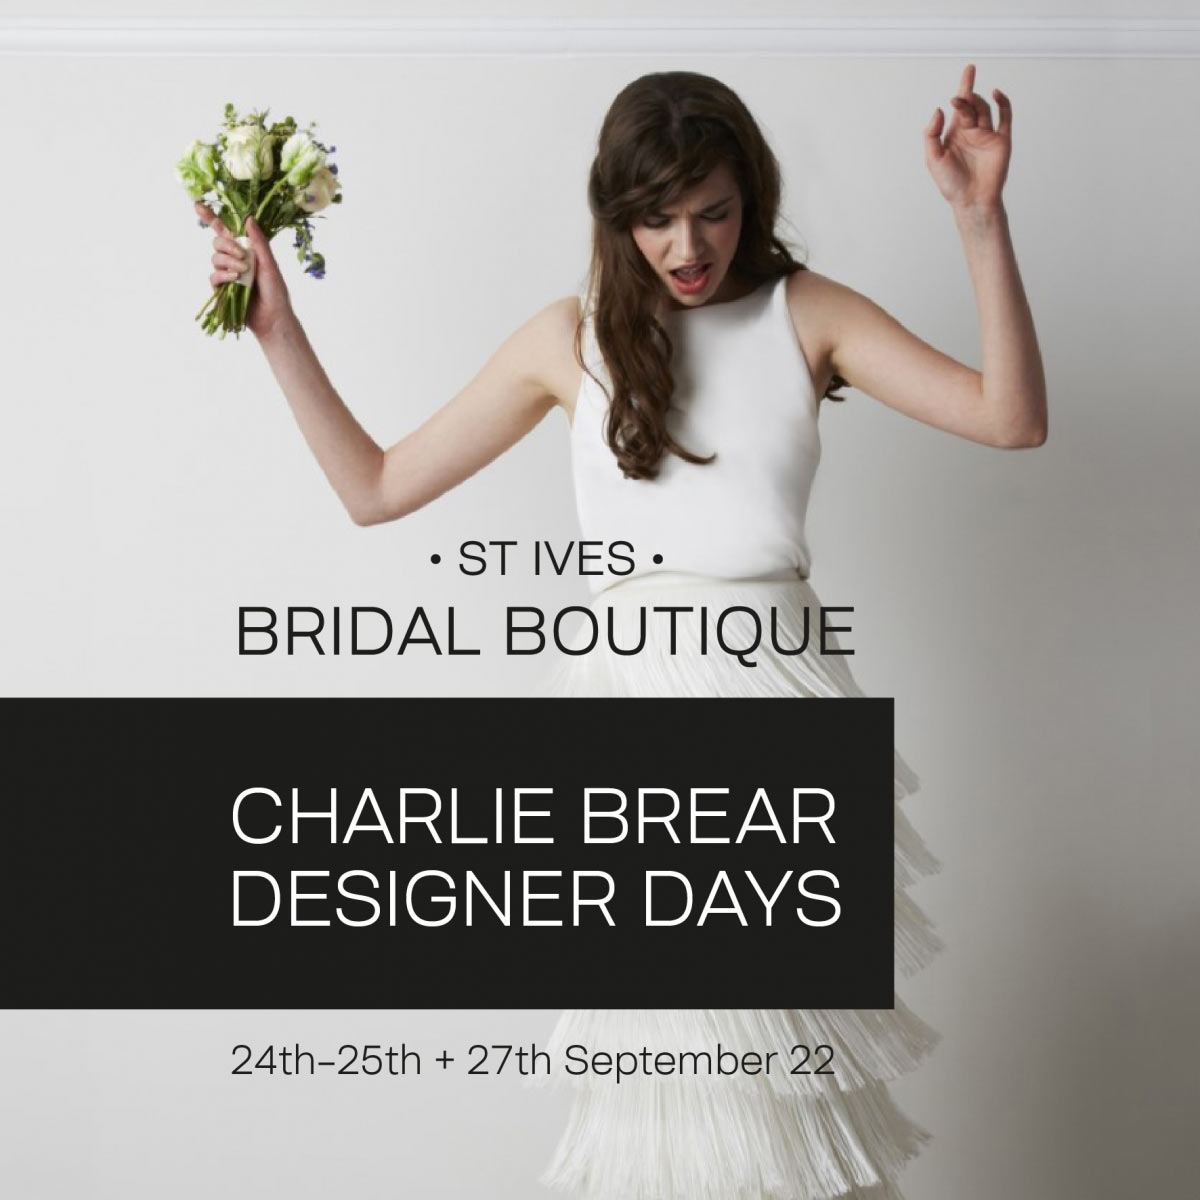 Charlie Brear designer days at St Ives Bridal Boutique